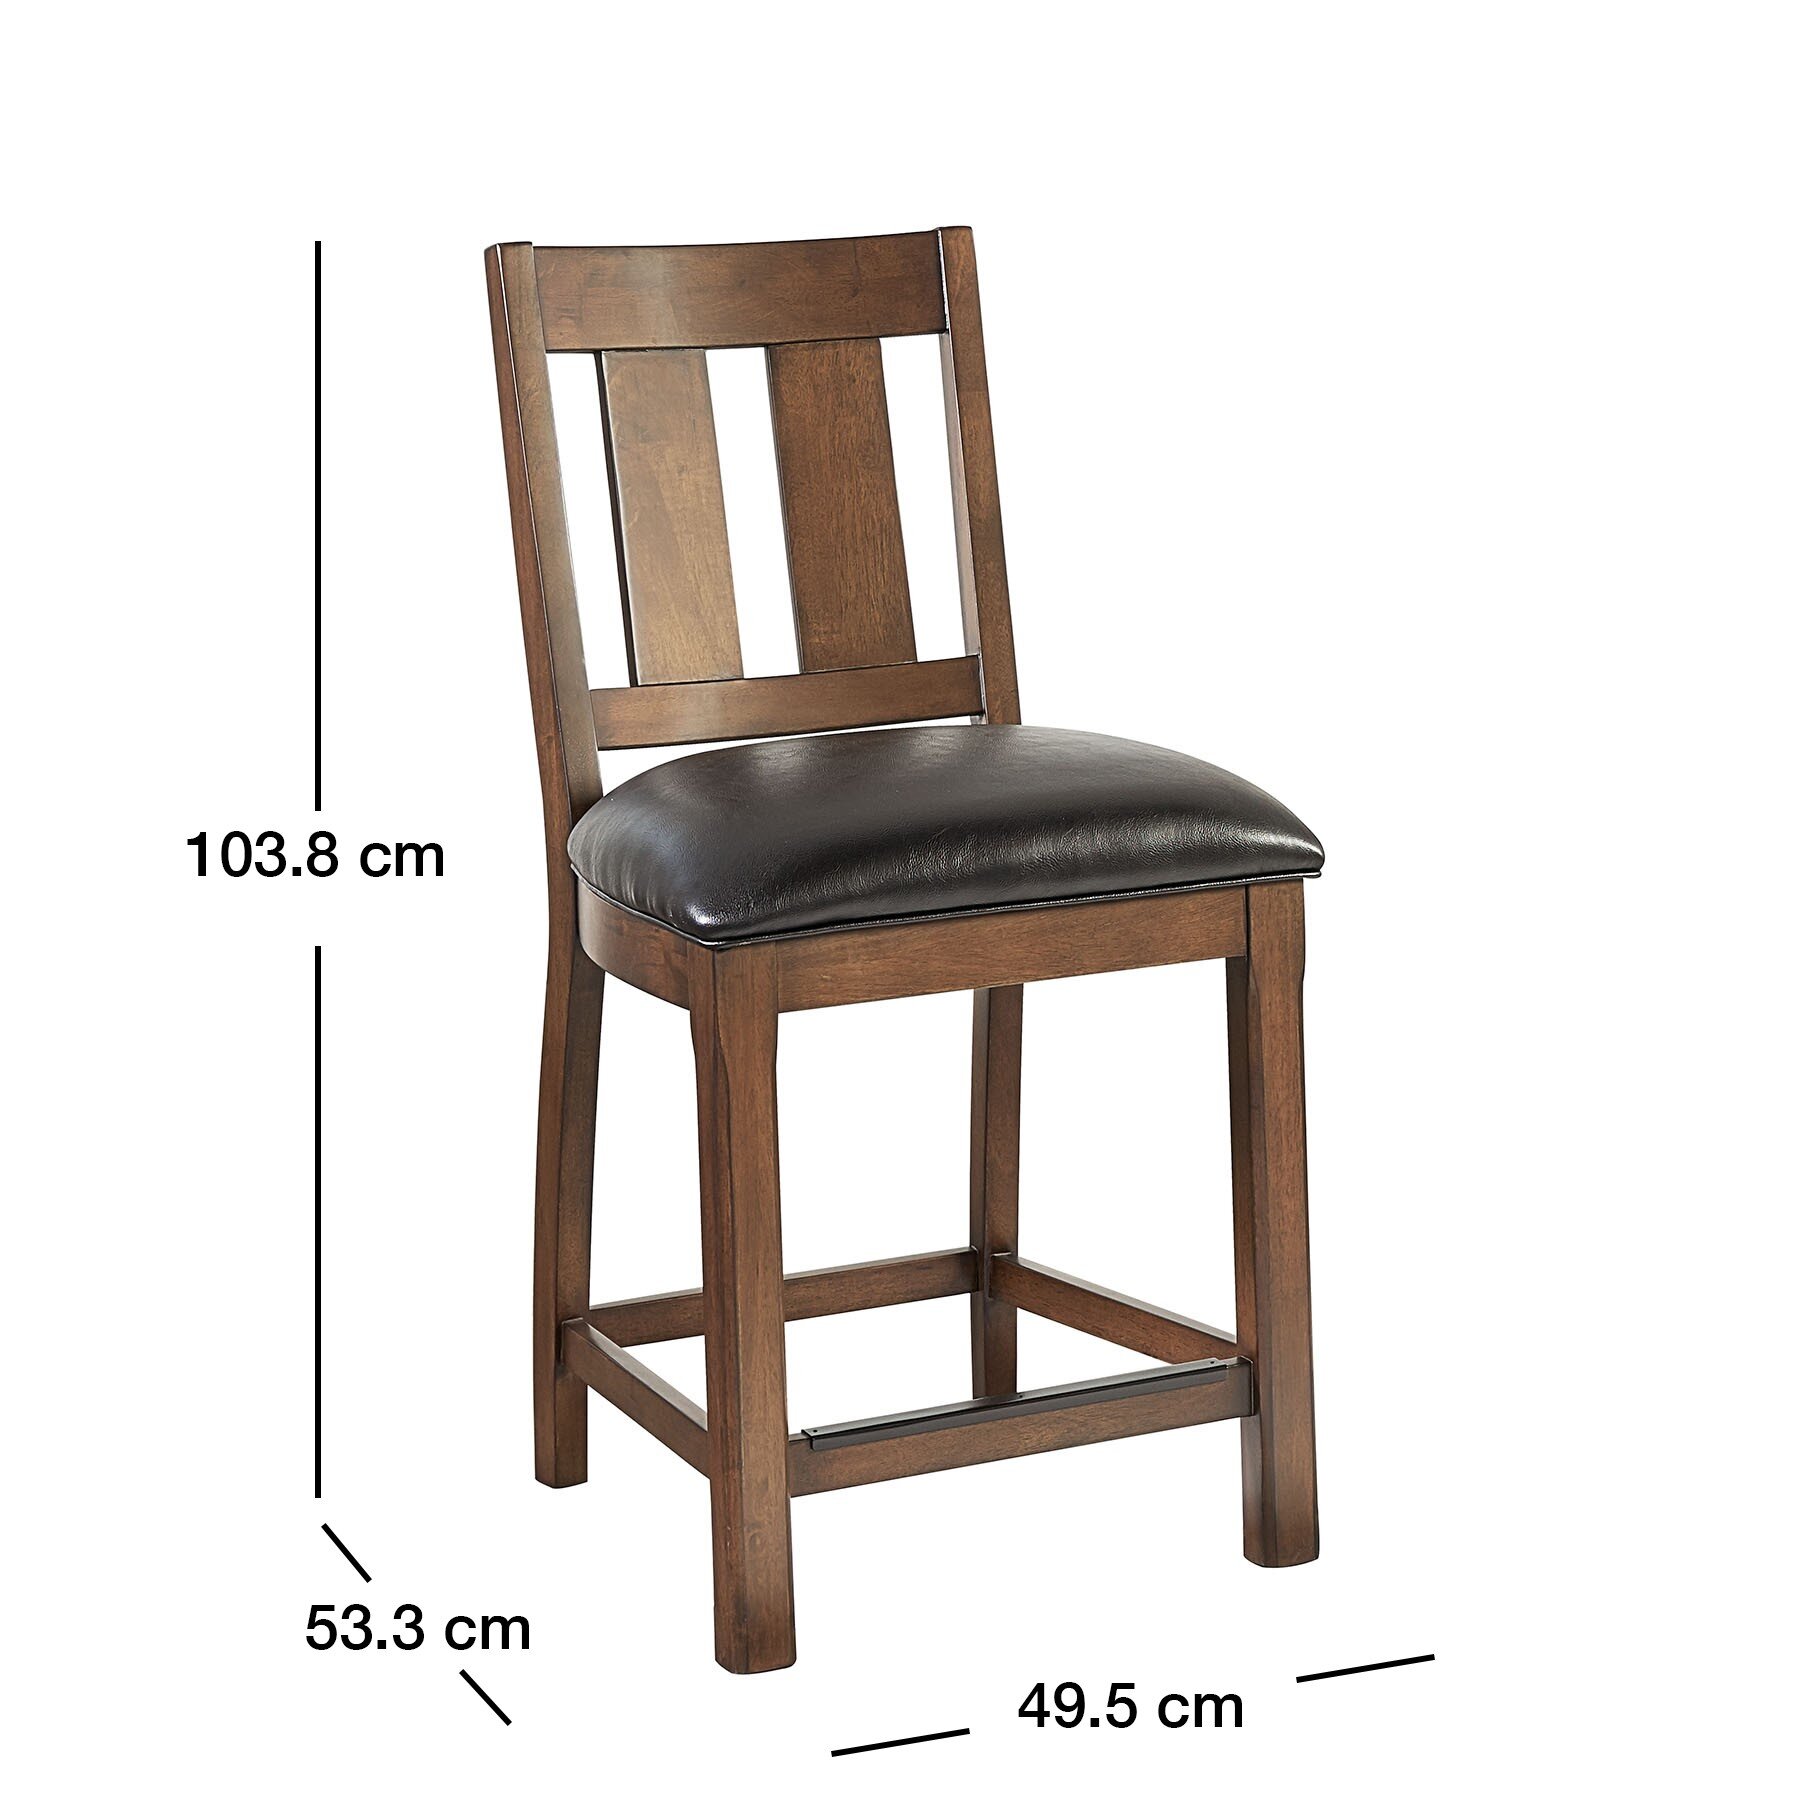 Chair Dims.jpg